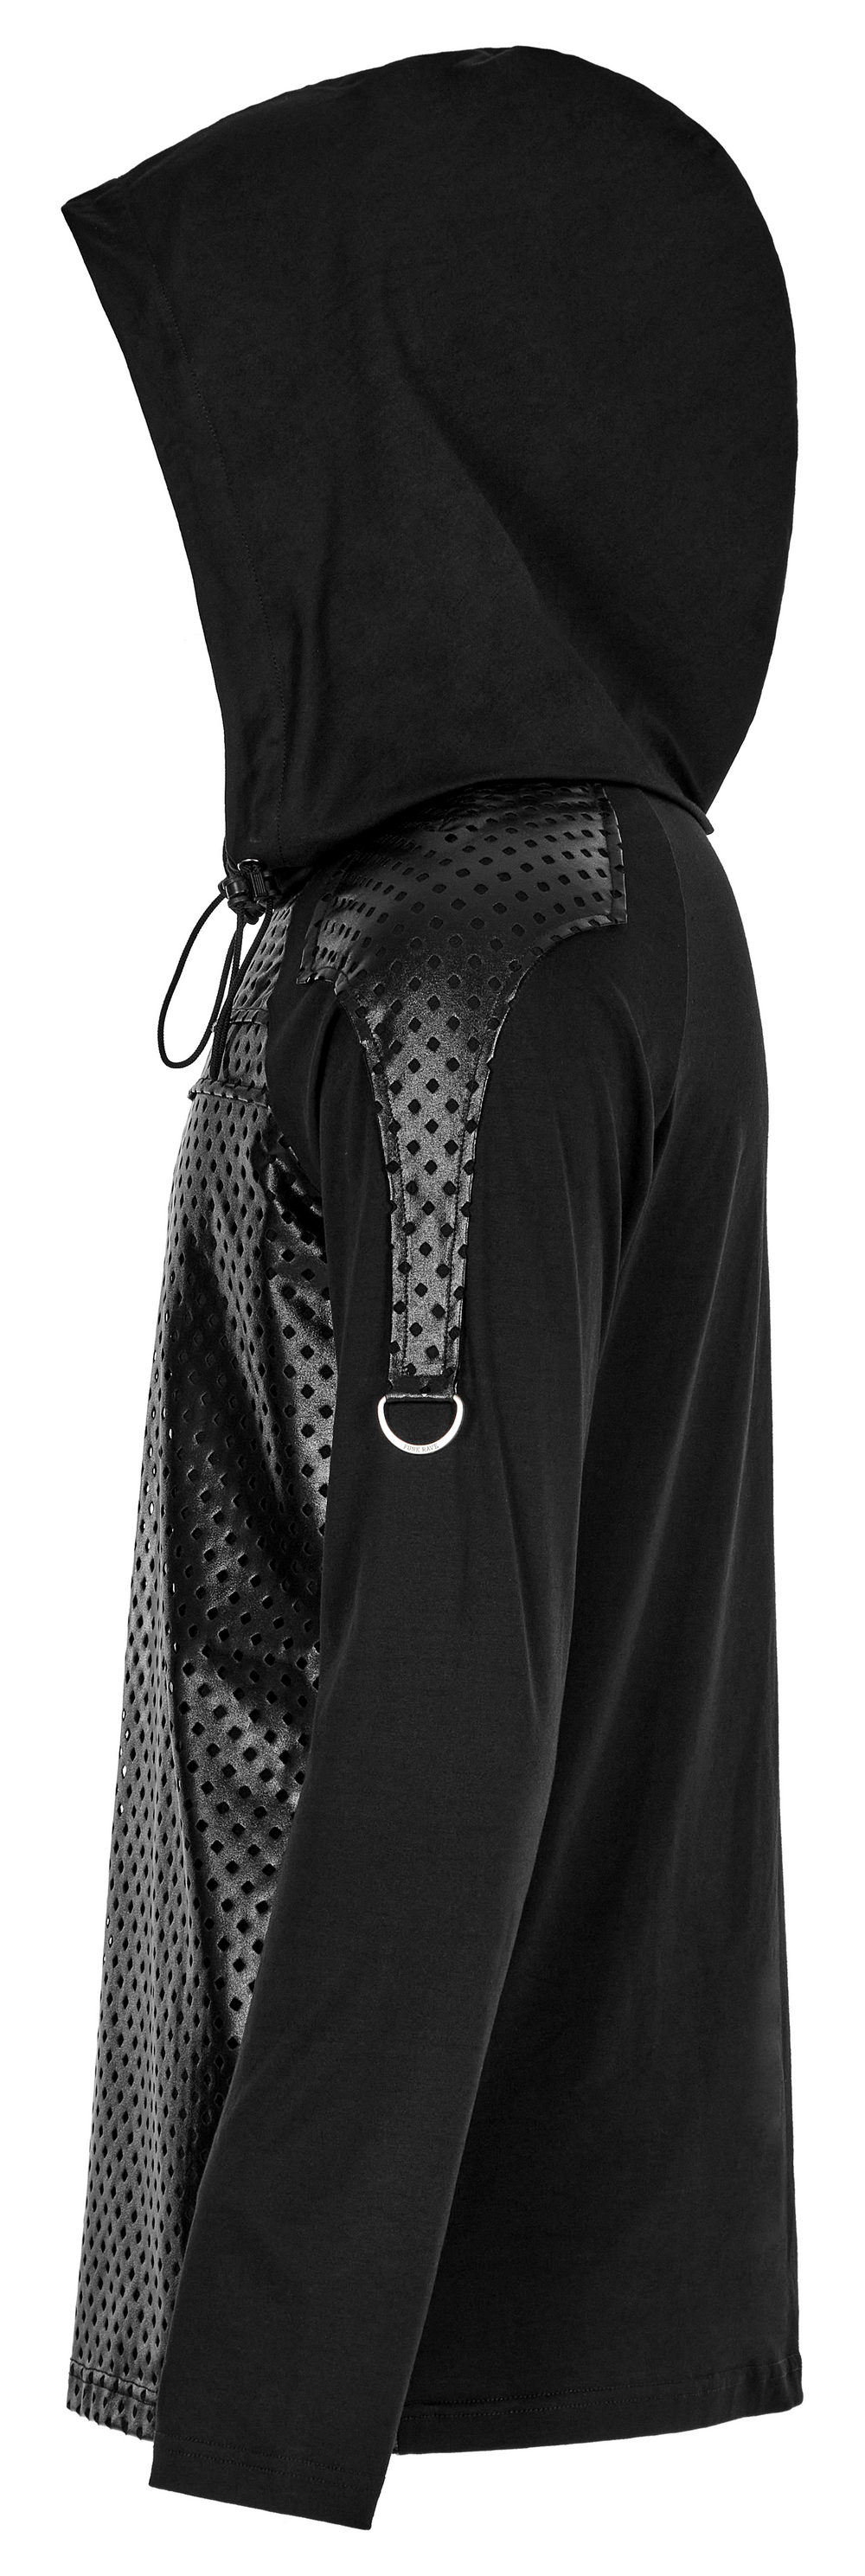 Modern Dark Goth Long Sleeves Hoodie with Embossed Detail - HARD'N'HEAVY